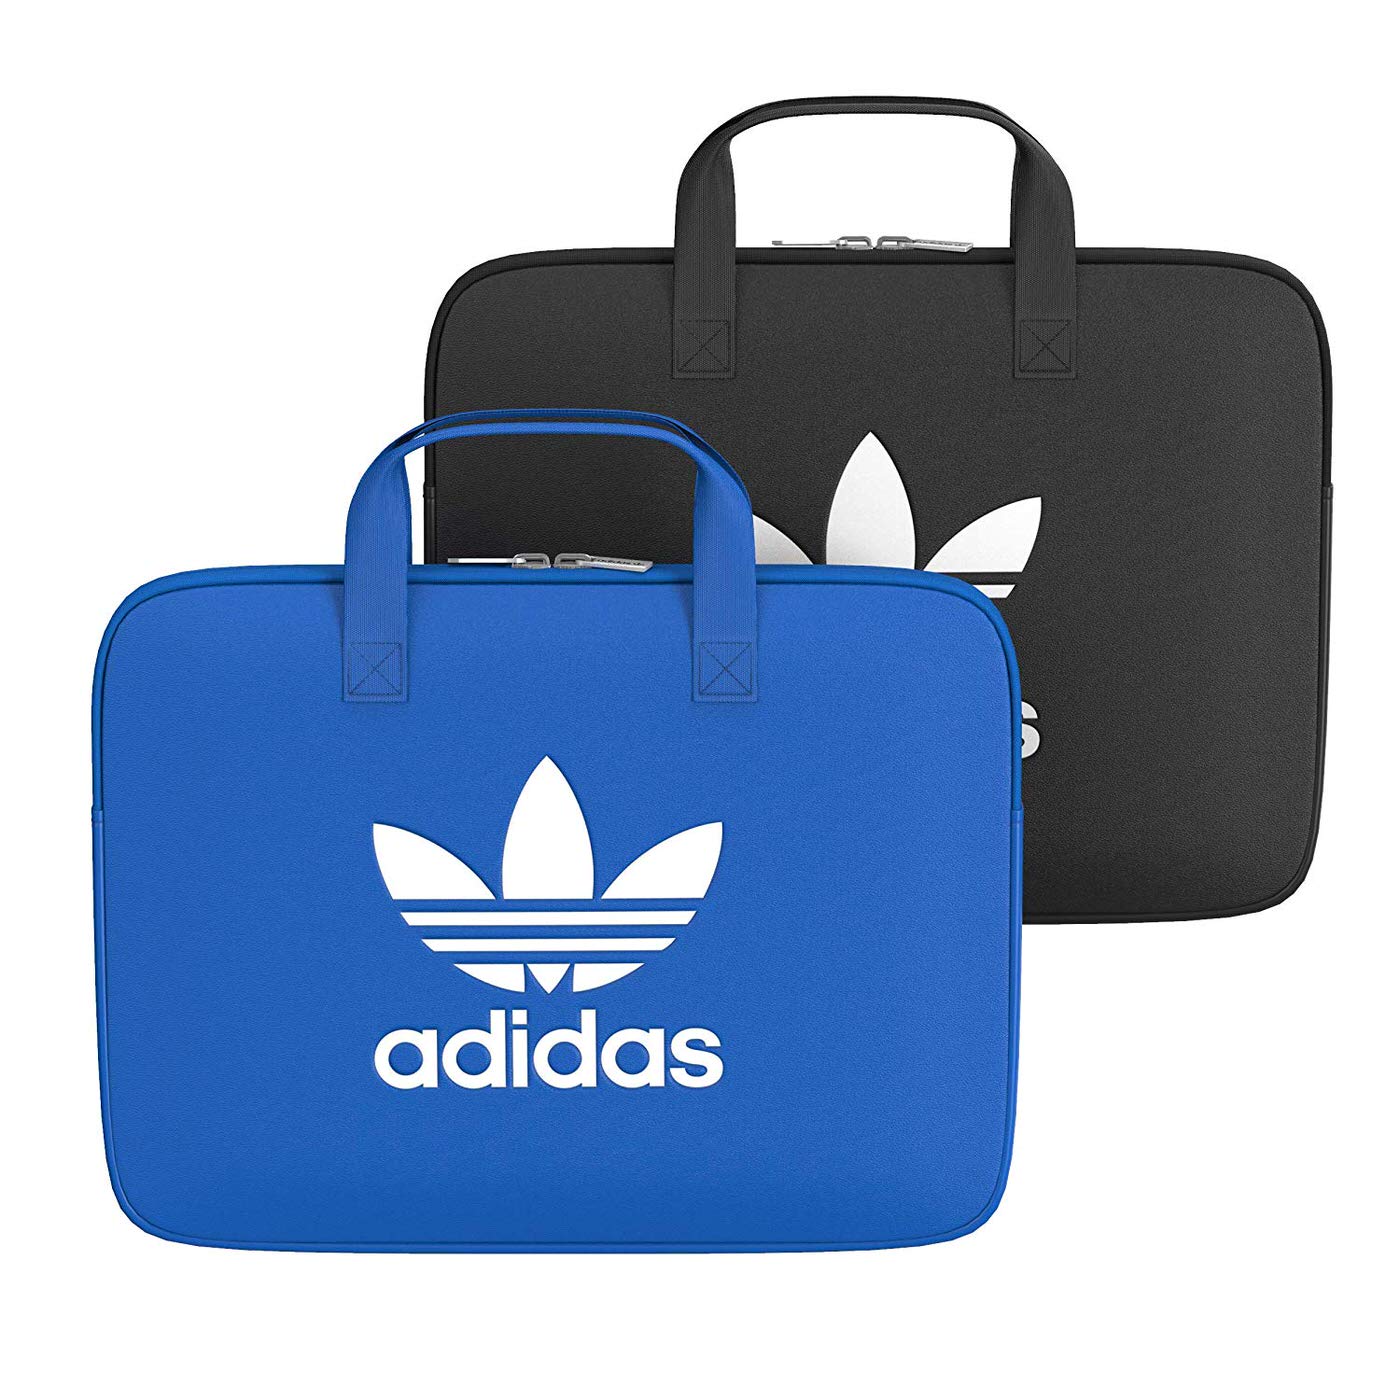 アディダス Adidas Originalsブランドからラップトップケースと新型ipadケースを発売 19春夏コレクション Corriente Top